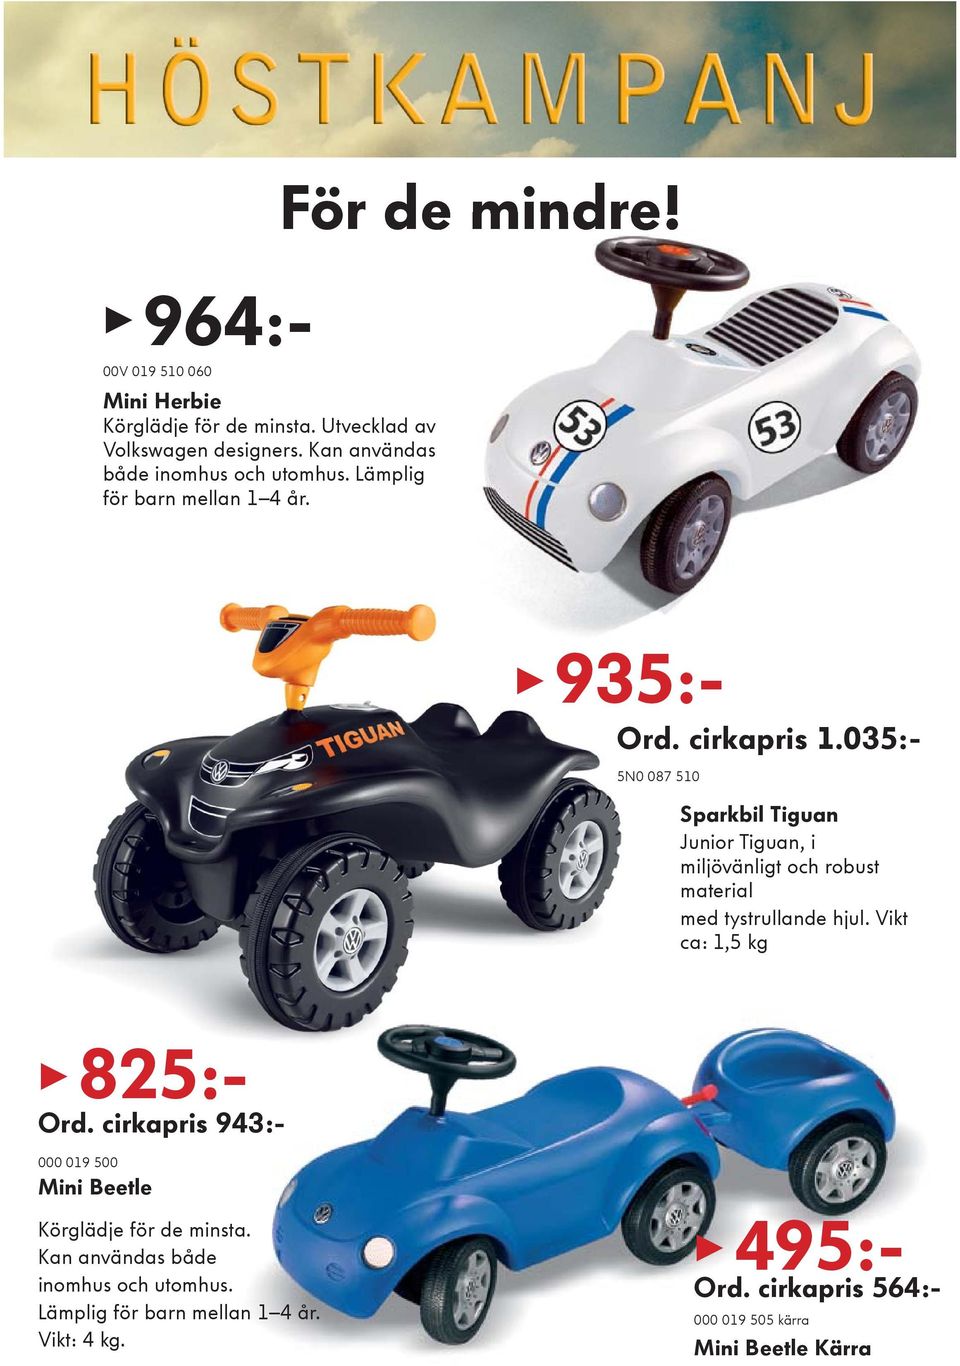 035:- 5N0 087 510 Sparkbil Tiguan Junior Tiguan, i miljövänligt och robust material med tystrullande hjul. Vikt ca: 1,5 kg 825:- Ord.